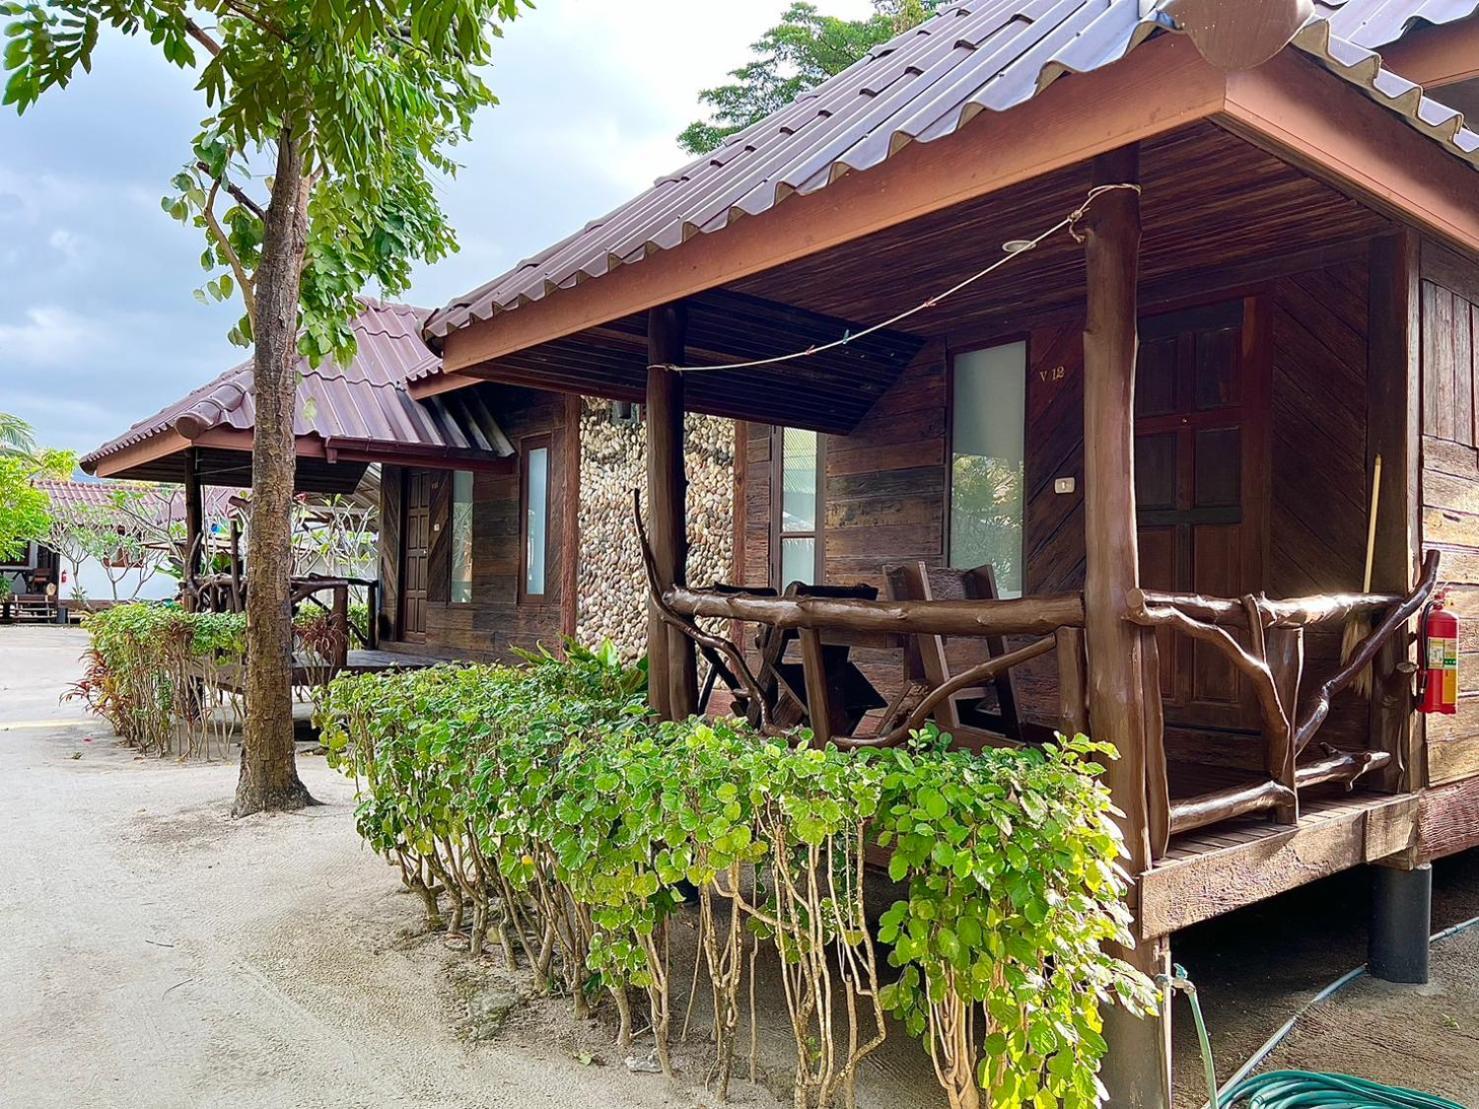 V-View Beach Resort Baan Tai Ngoại thất bức ảnh